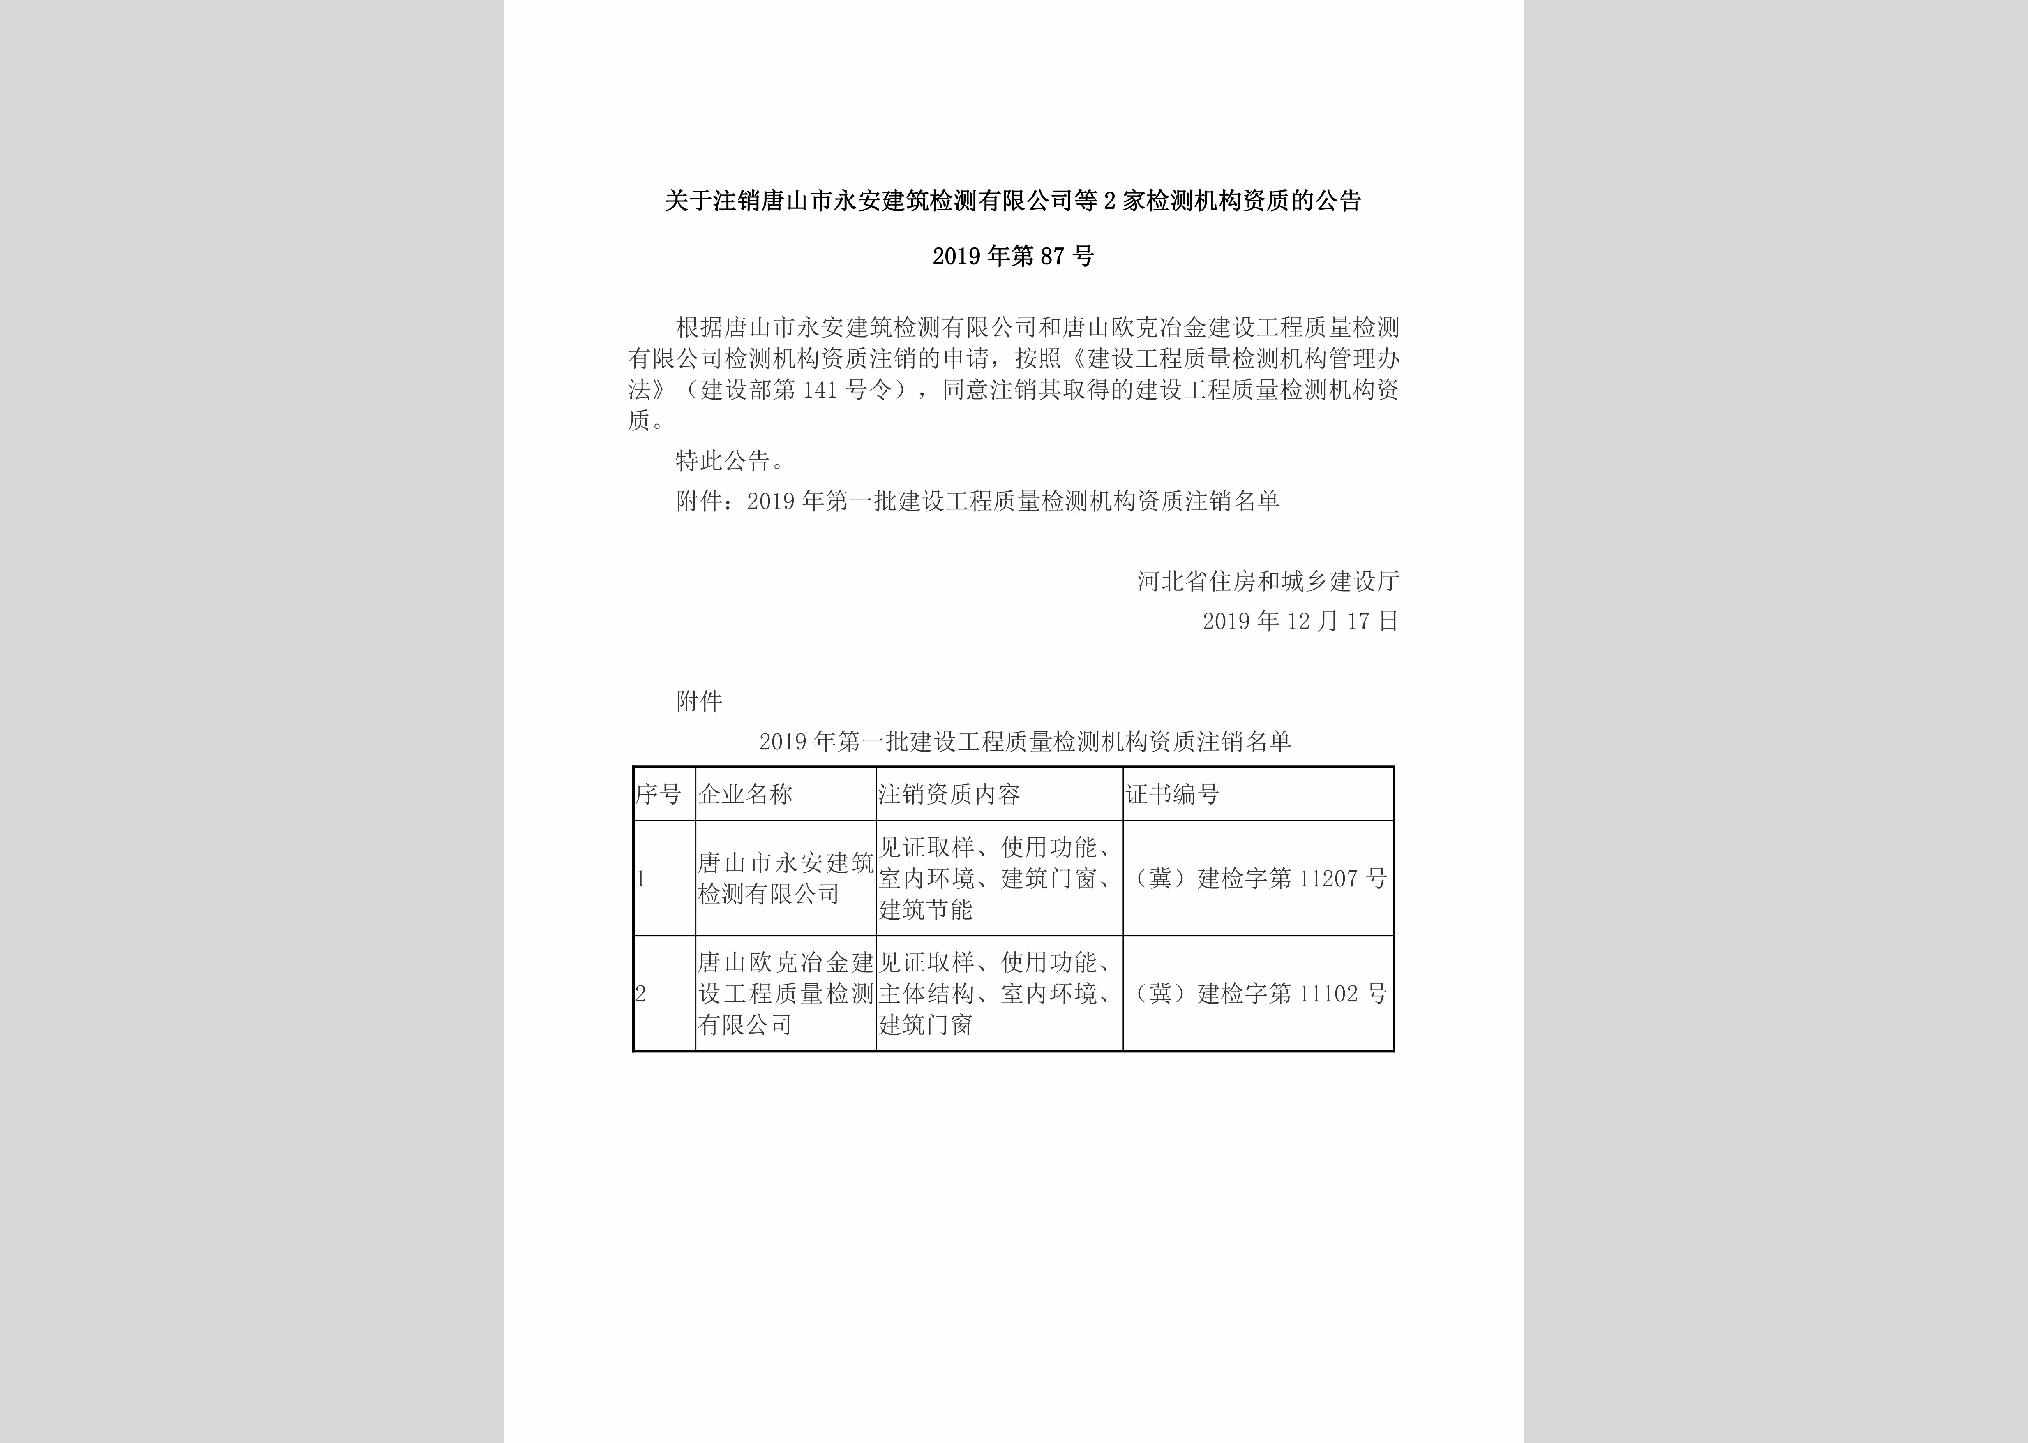 2019年第87号：关于注销唐山市永安建筑检测有限公司等2家检测机构资质的公告